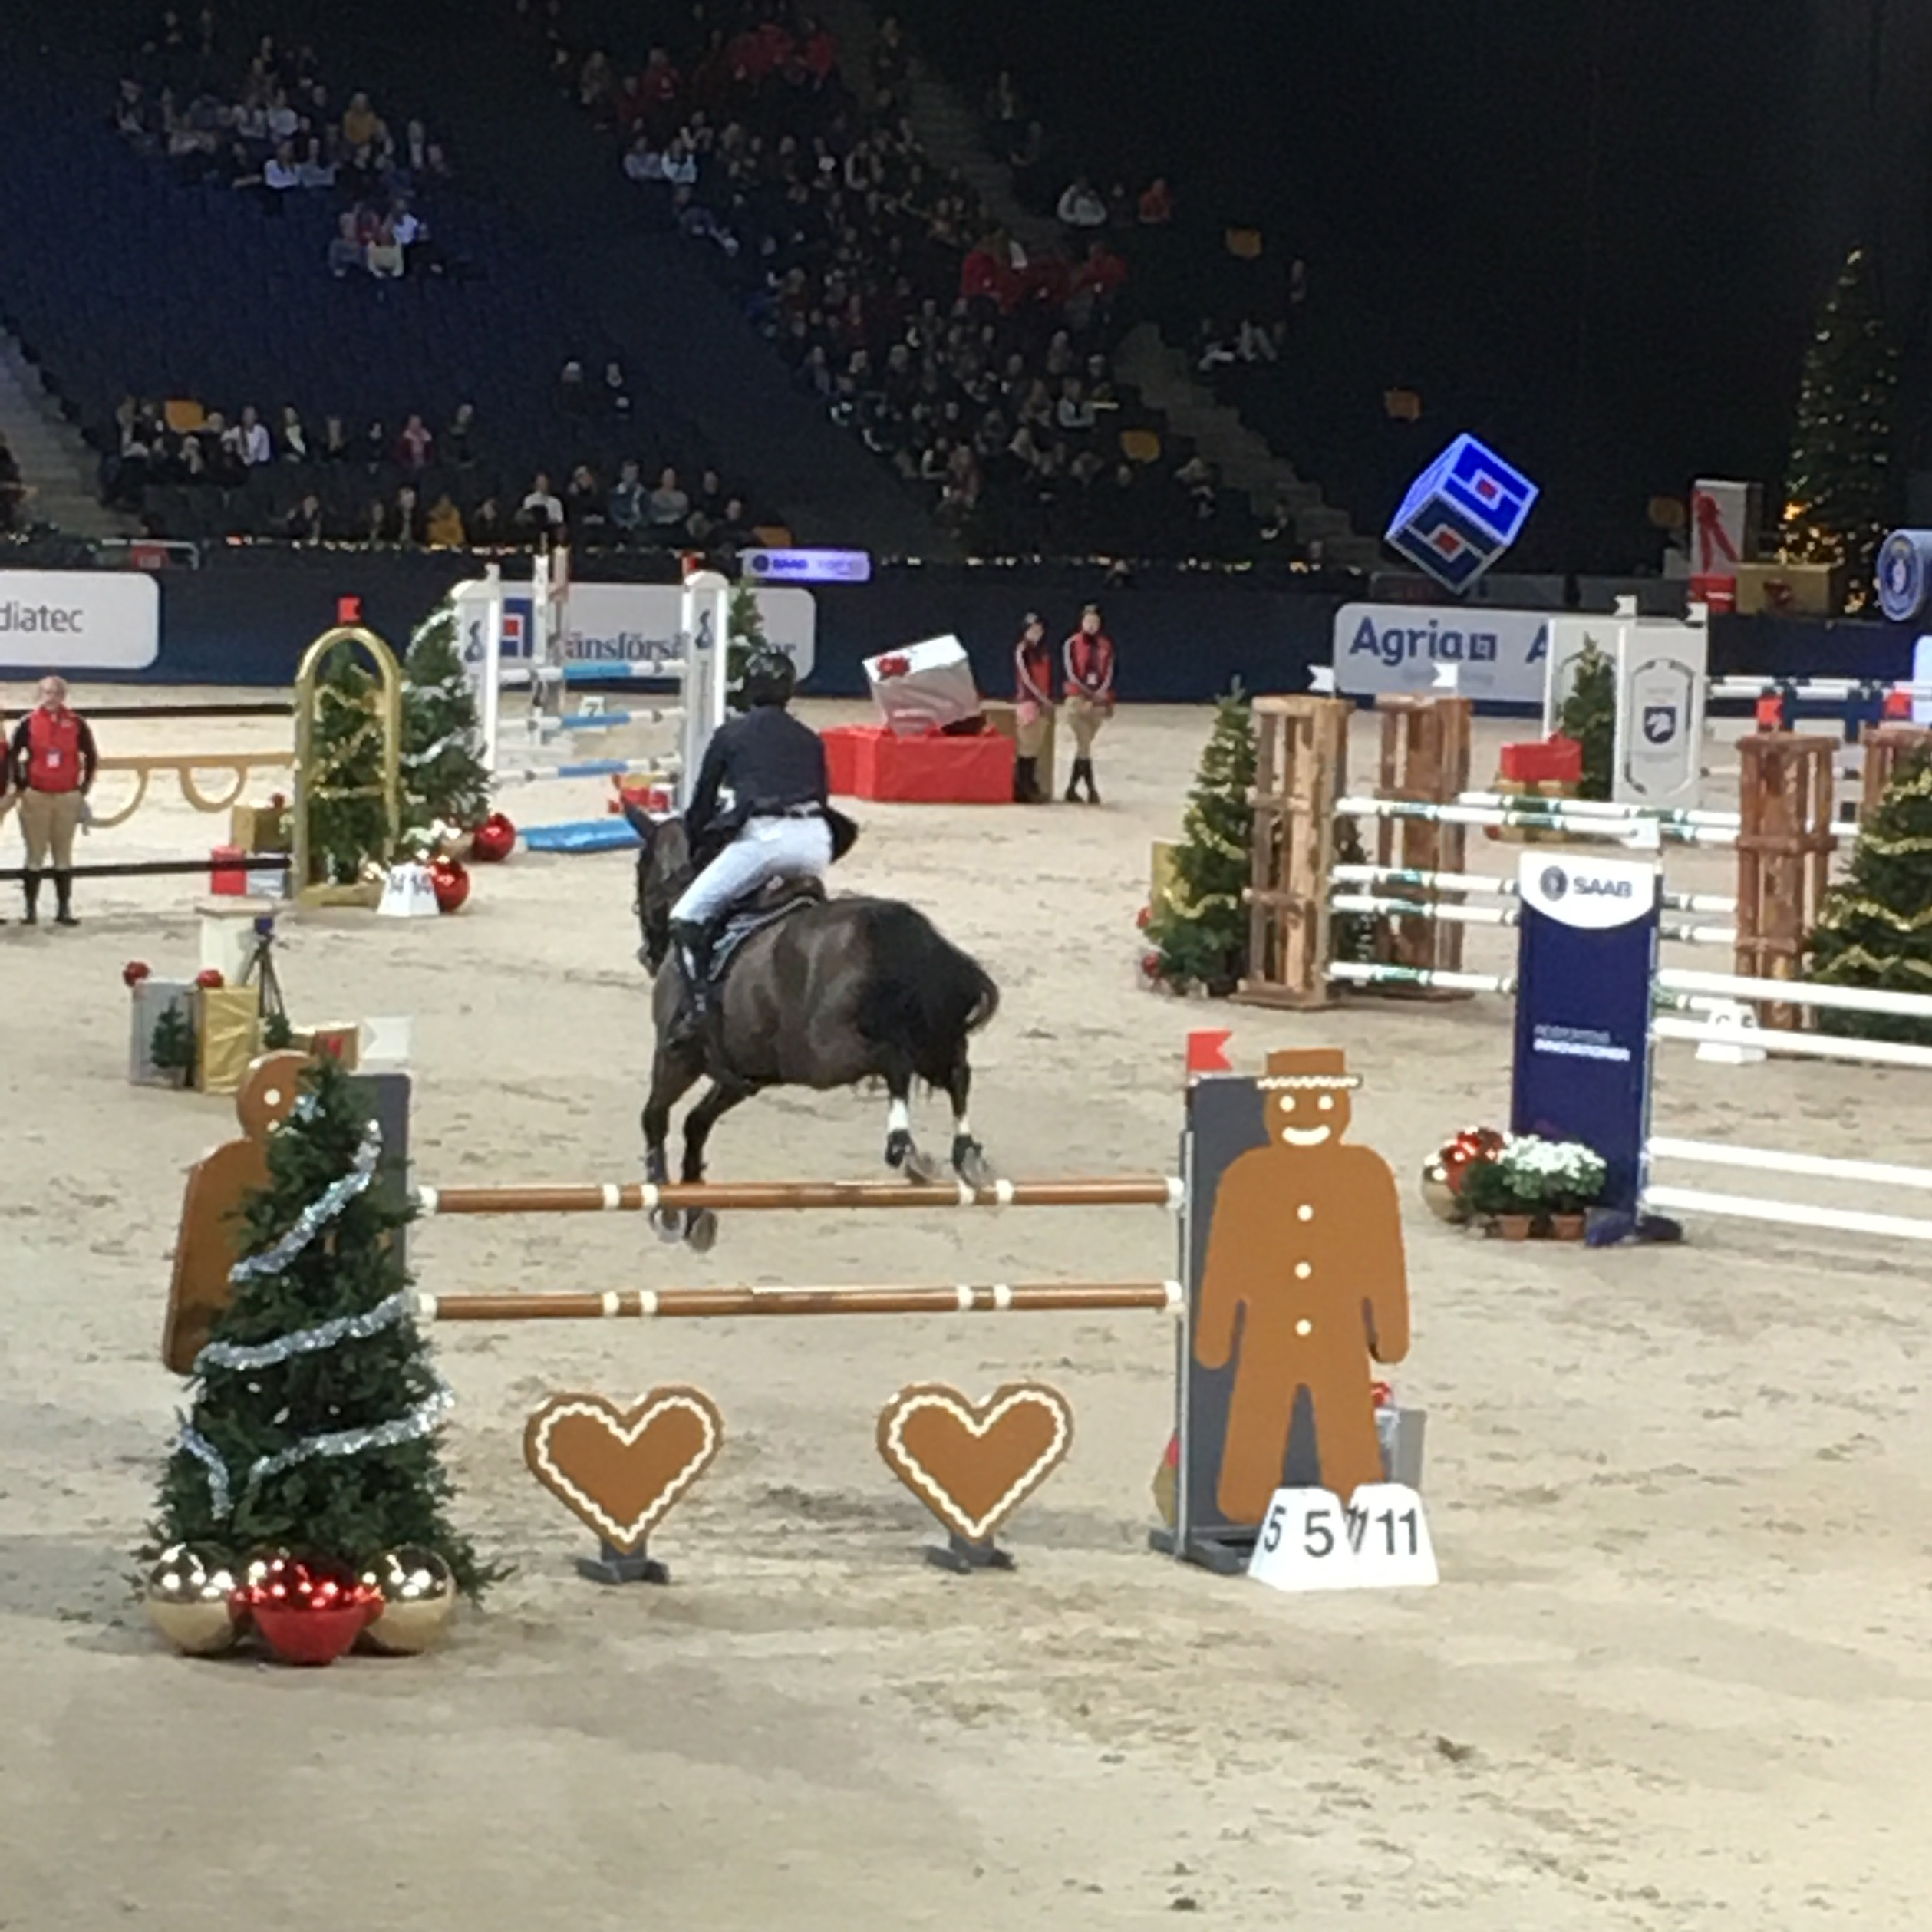 Hopptävling inför fullsatta läktare. Hindren är juldekorerade och en stor brun häst hoppar över ett med pepparkaksgubbar.